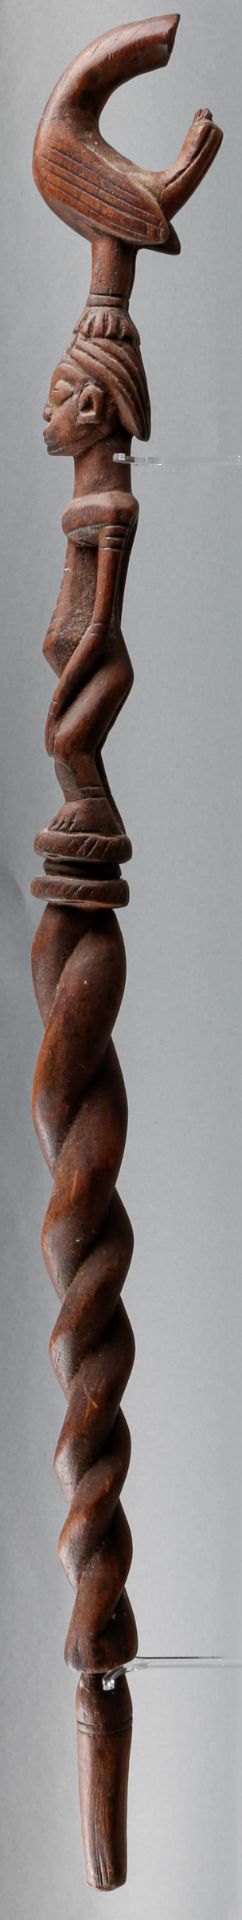 figürlich beschnitzter Gehstock der Dogon (Mali), 20. Jh. - Image 3 of 3